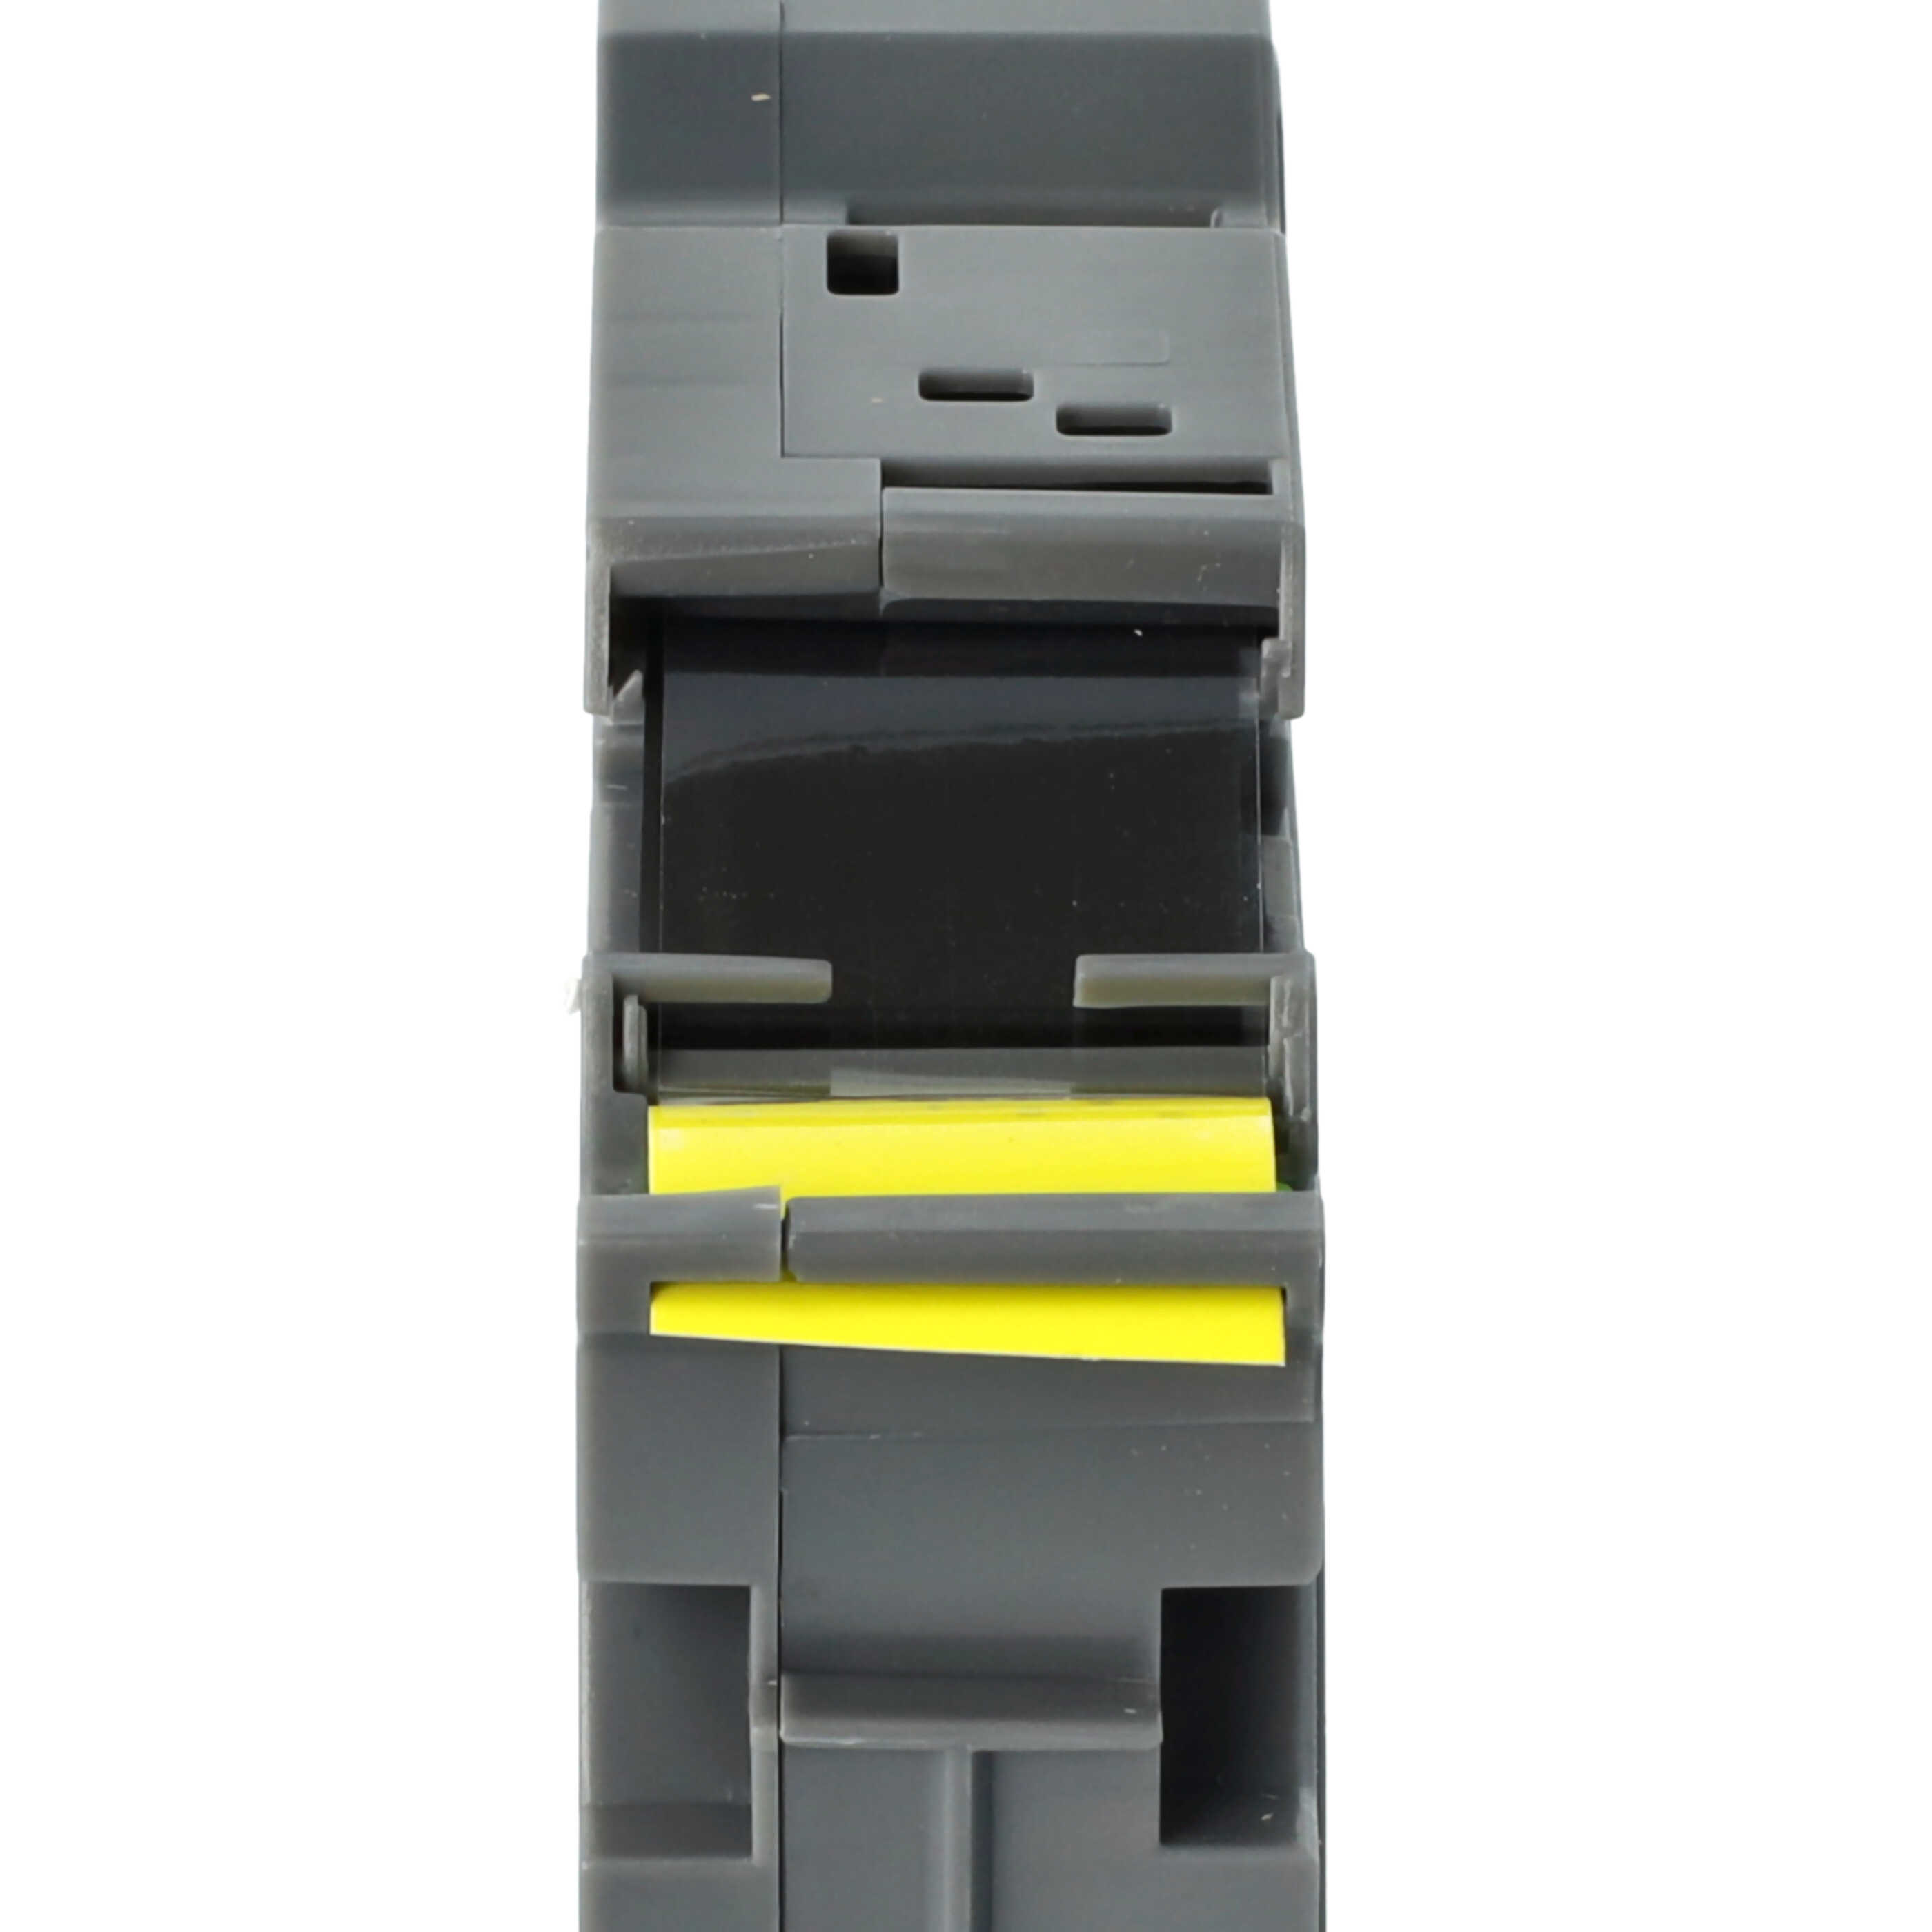 Taśma do etykiet zam. Brother TZ-FX641, TZE-FX641 - 18mm, napis czarny / taśma żółta, elastyczna